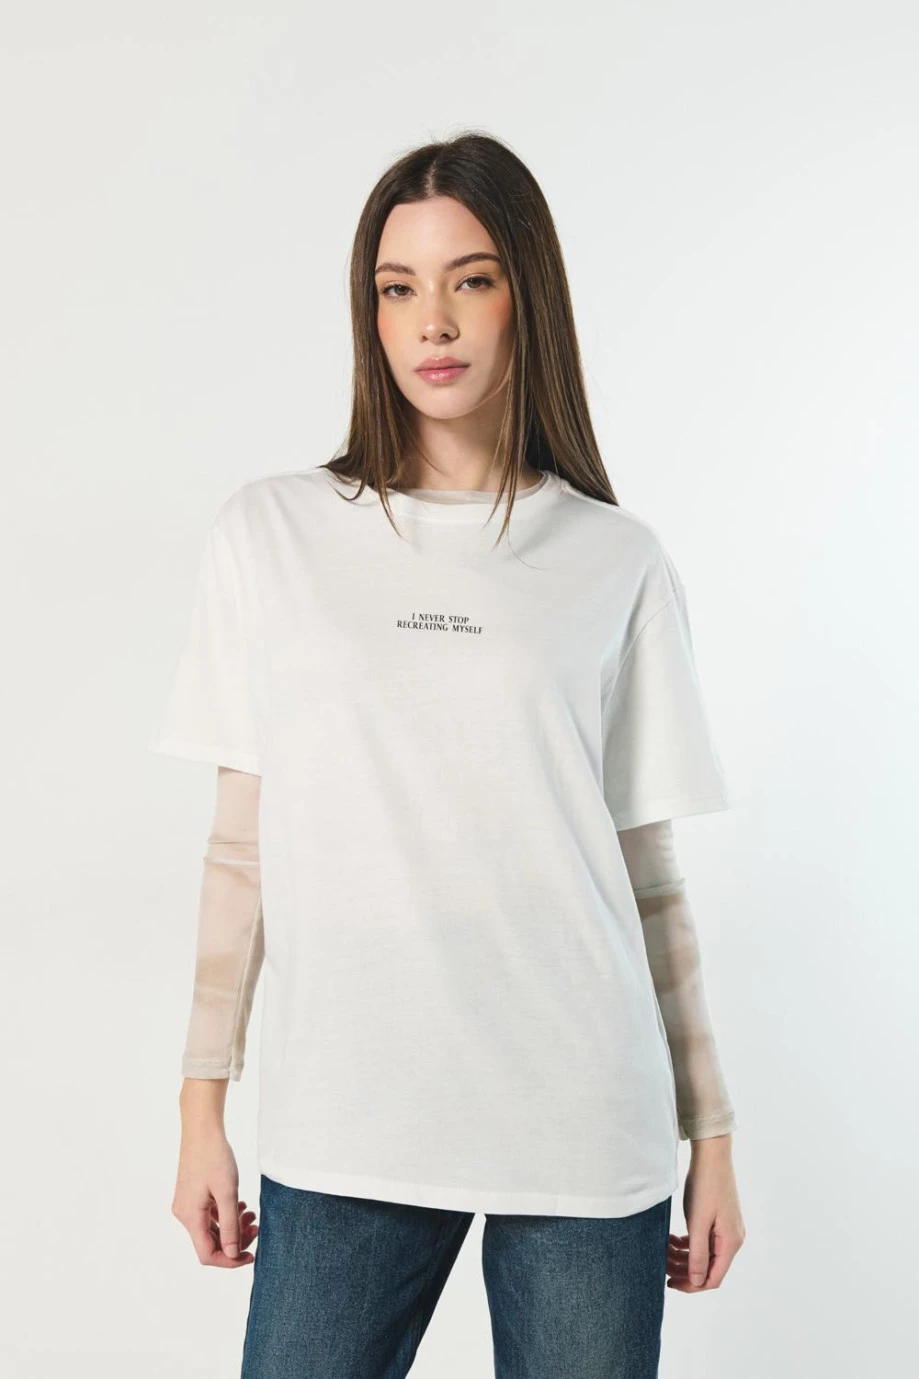 Camiseta crema clara con textos estampados y manga corta